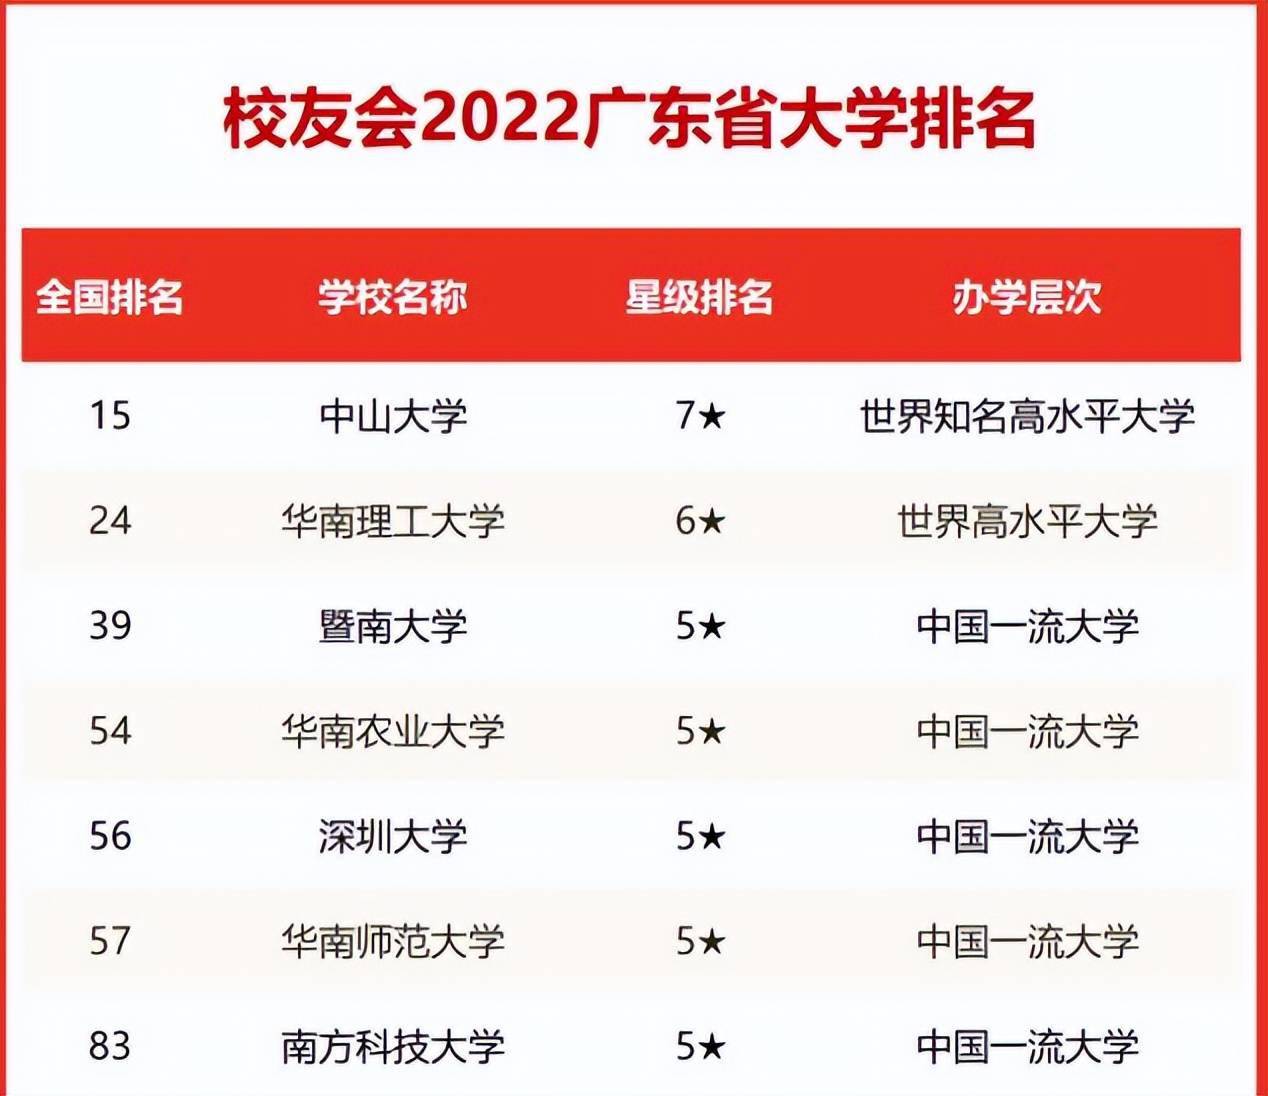 广东有哪些211大学总共有4所学校谁的实力更强可谓神仙打架